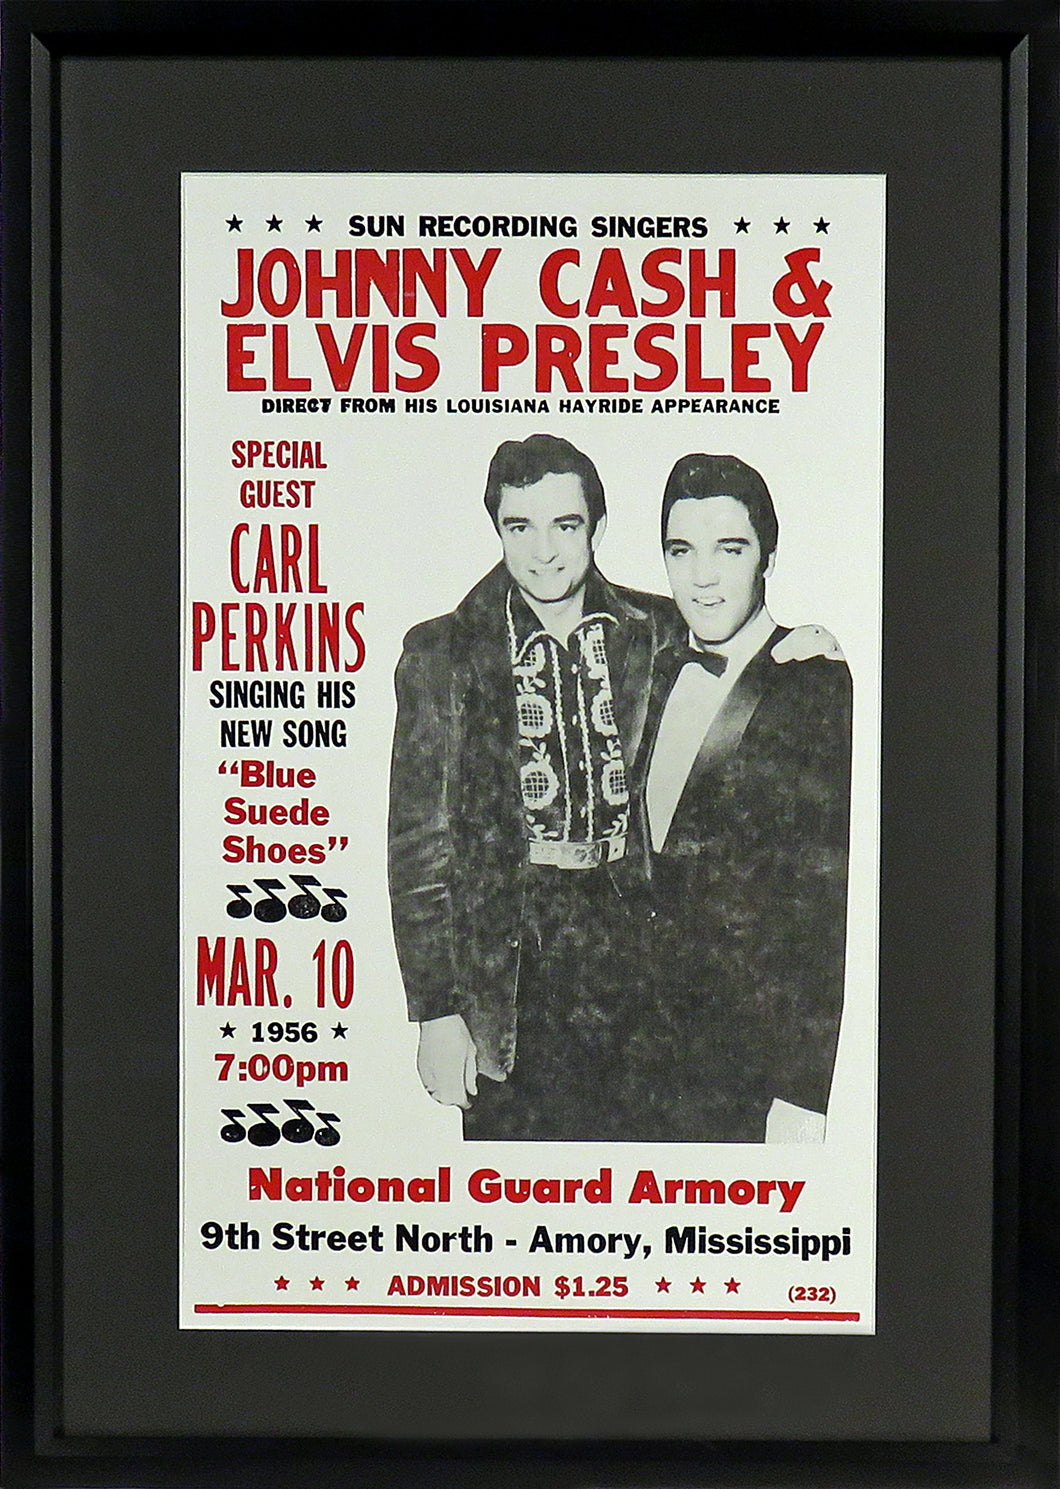 Johnny Cash & Elvis Presley “Cash & The King” Framed Concert Poster (Engraved Series)